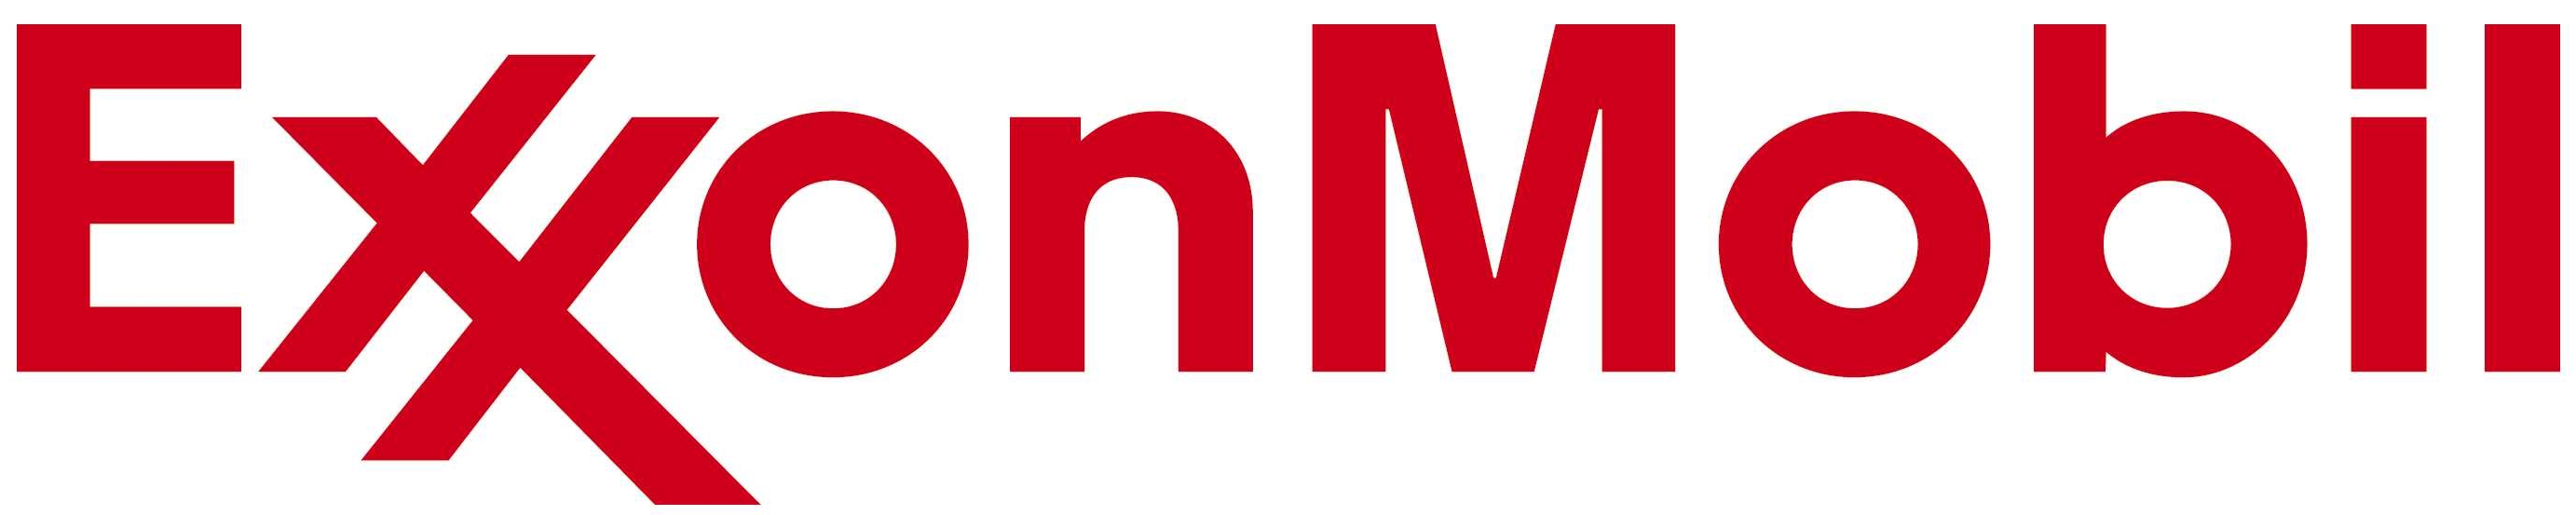 Логотип корпорации Exxon Mobil